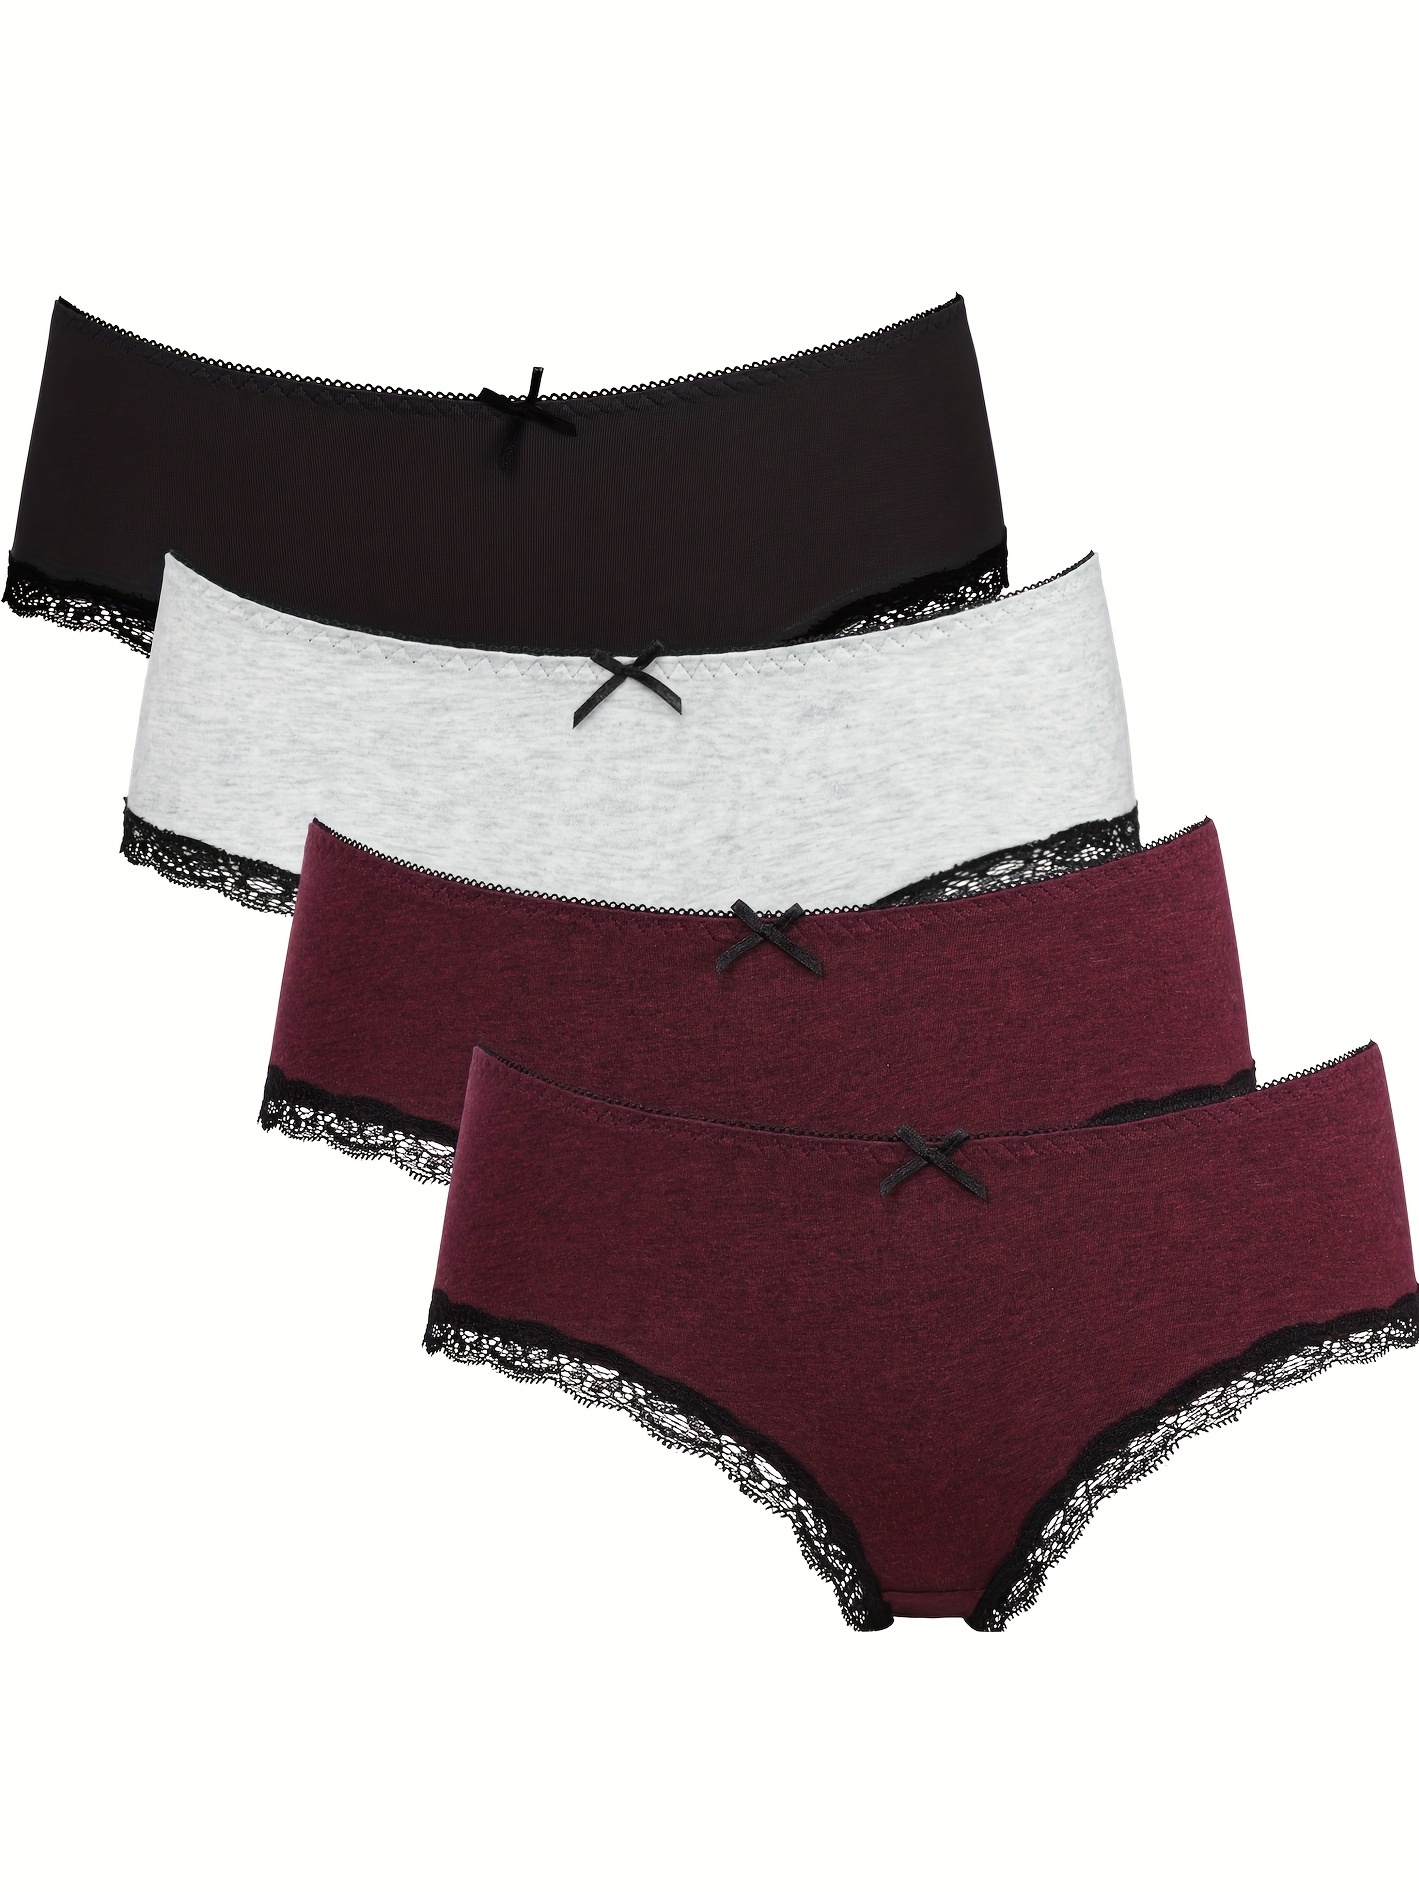 7pcs Floral & Heart Print Thongs, Cute & Comfy Lace Trim Intimates Panties,  Women's Lingerie & Underwear